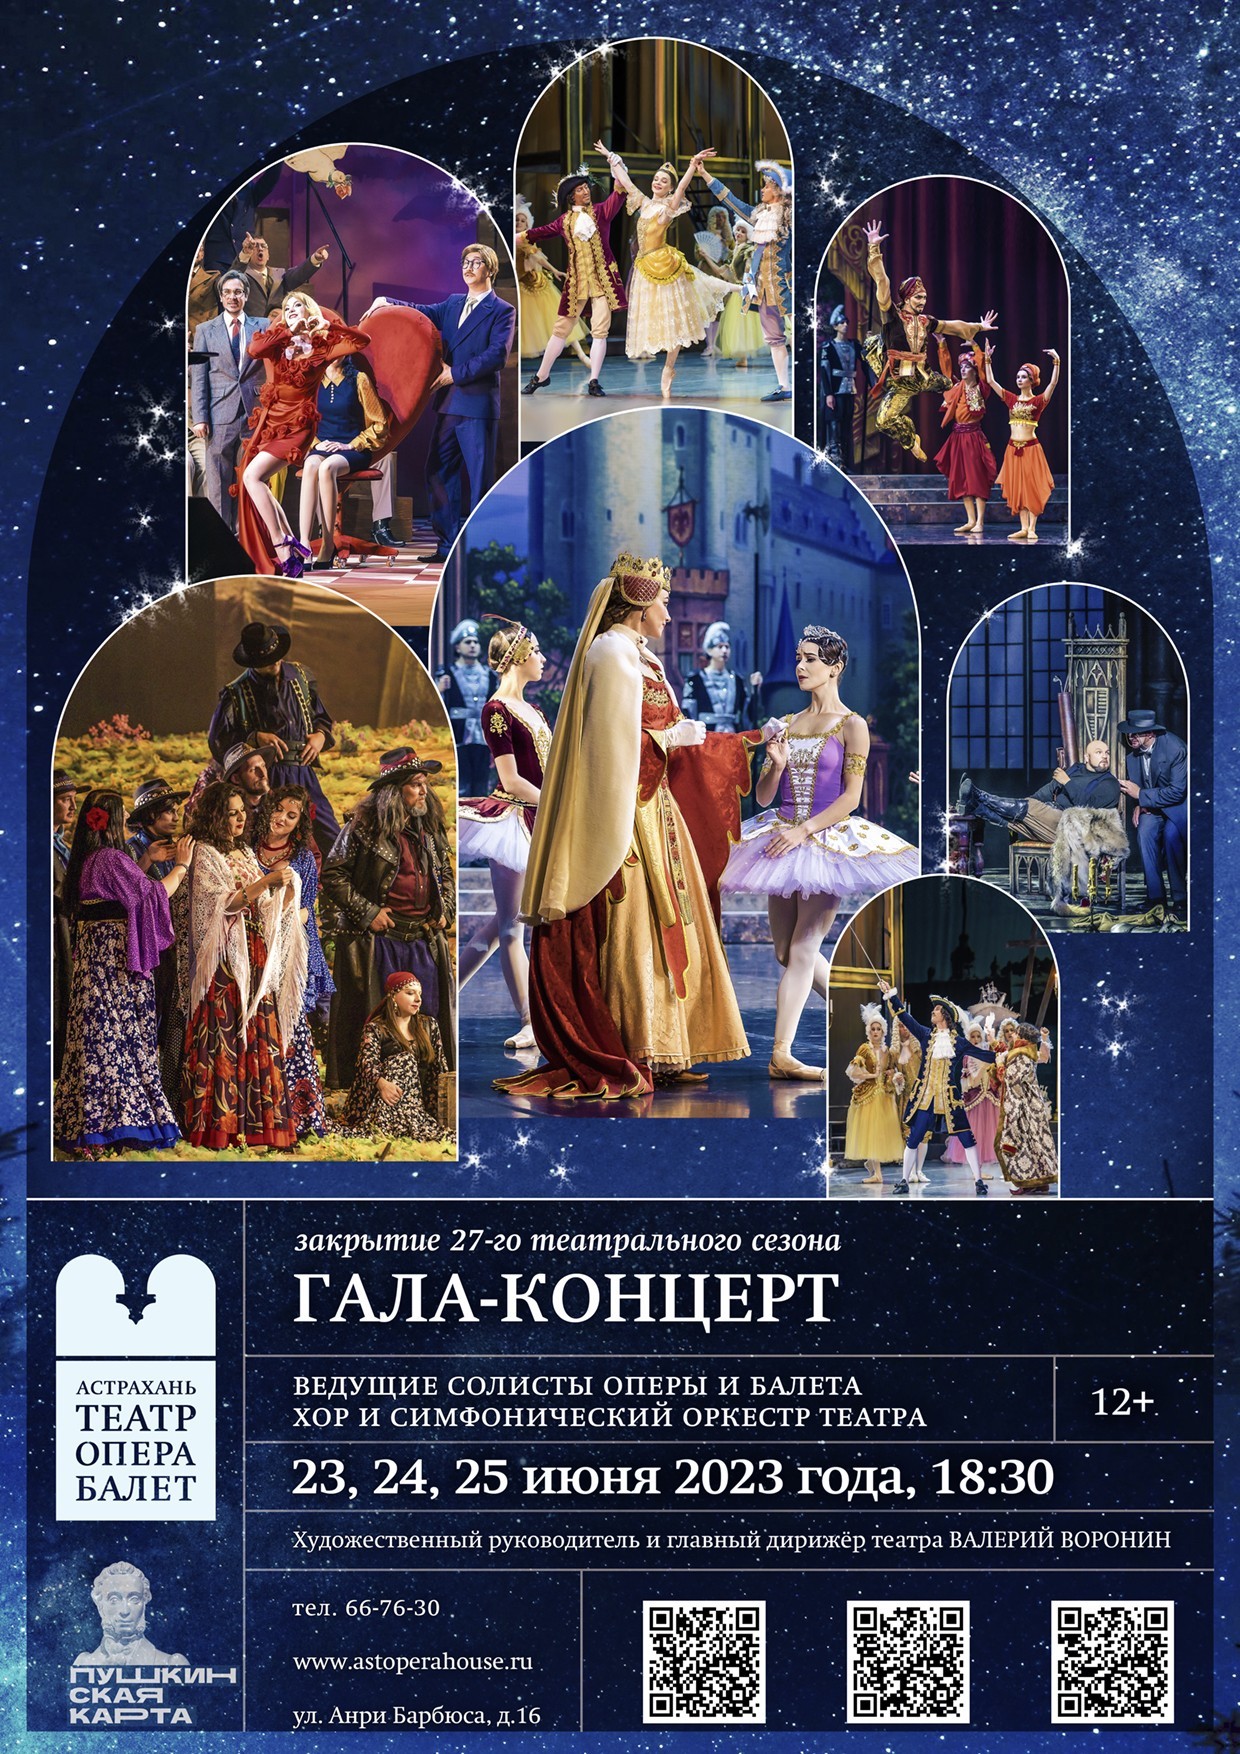 Астраханский театр оперы и балета приглашает Вас на  торжество искусства с участием лучших артистов театра